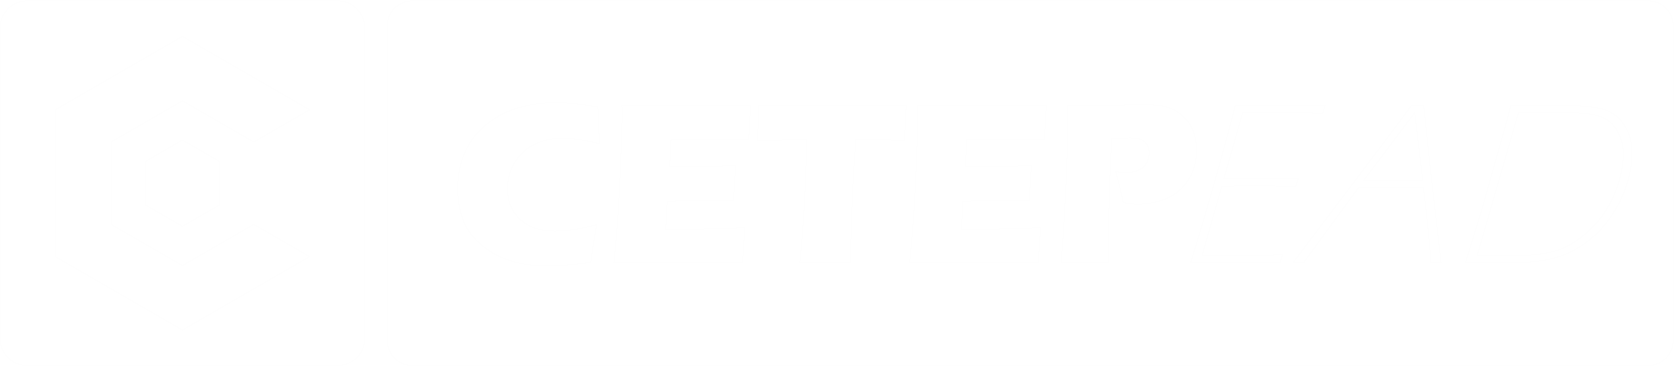 CETEP EAD